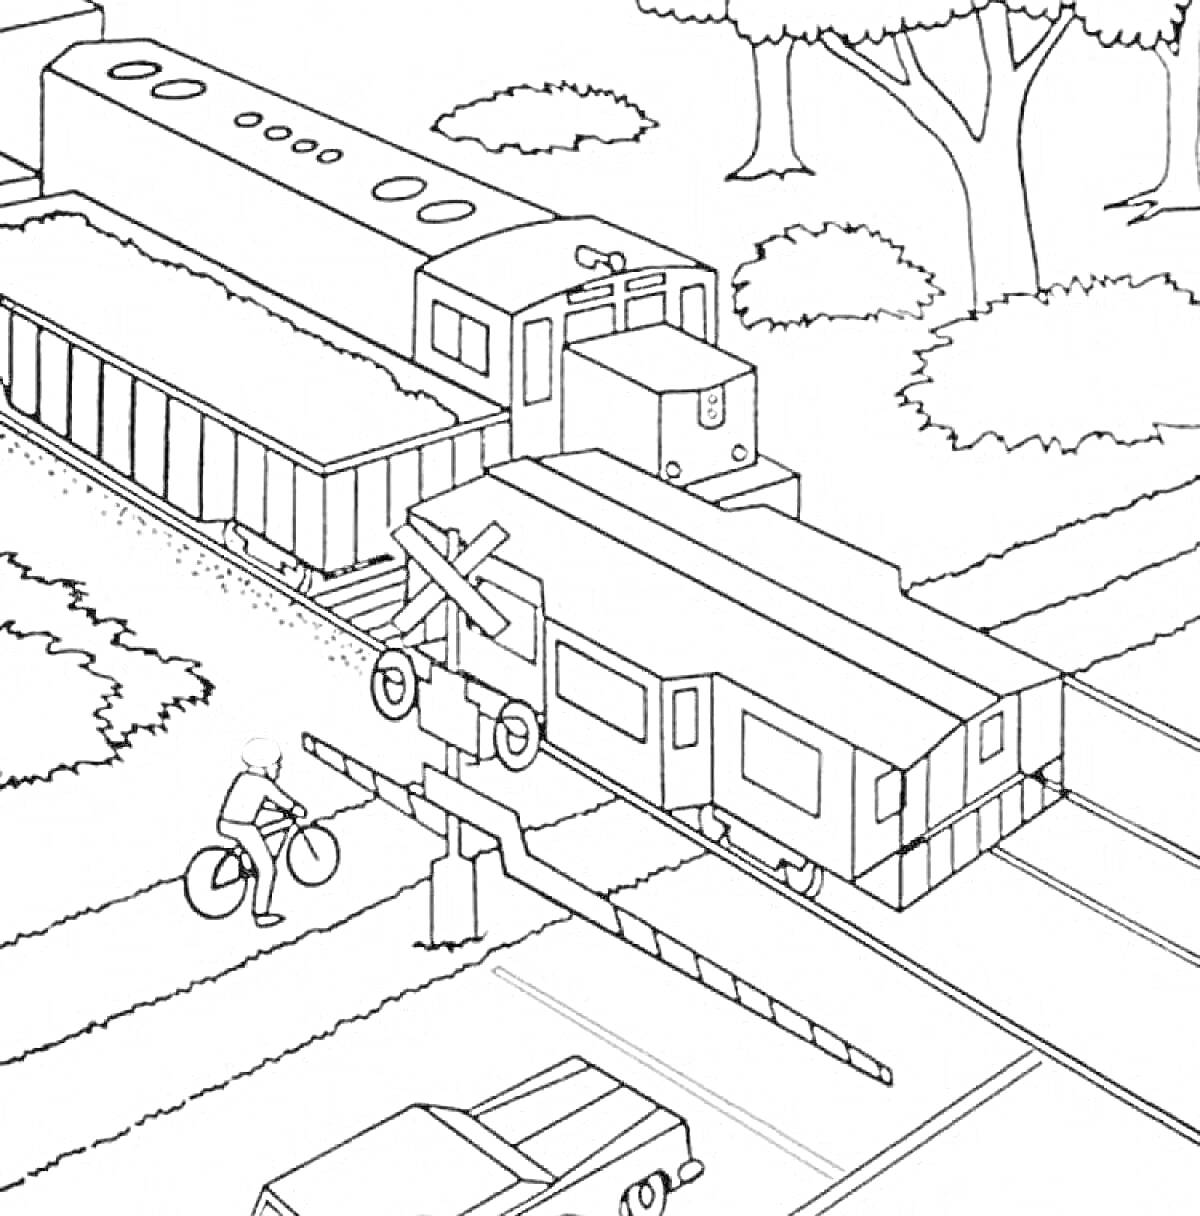 Раскраска Железнодорожный переезд с поездом, фурой, велосипедистом и автомобилем на дороге в лесистой местности